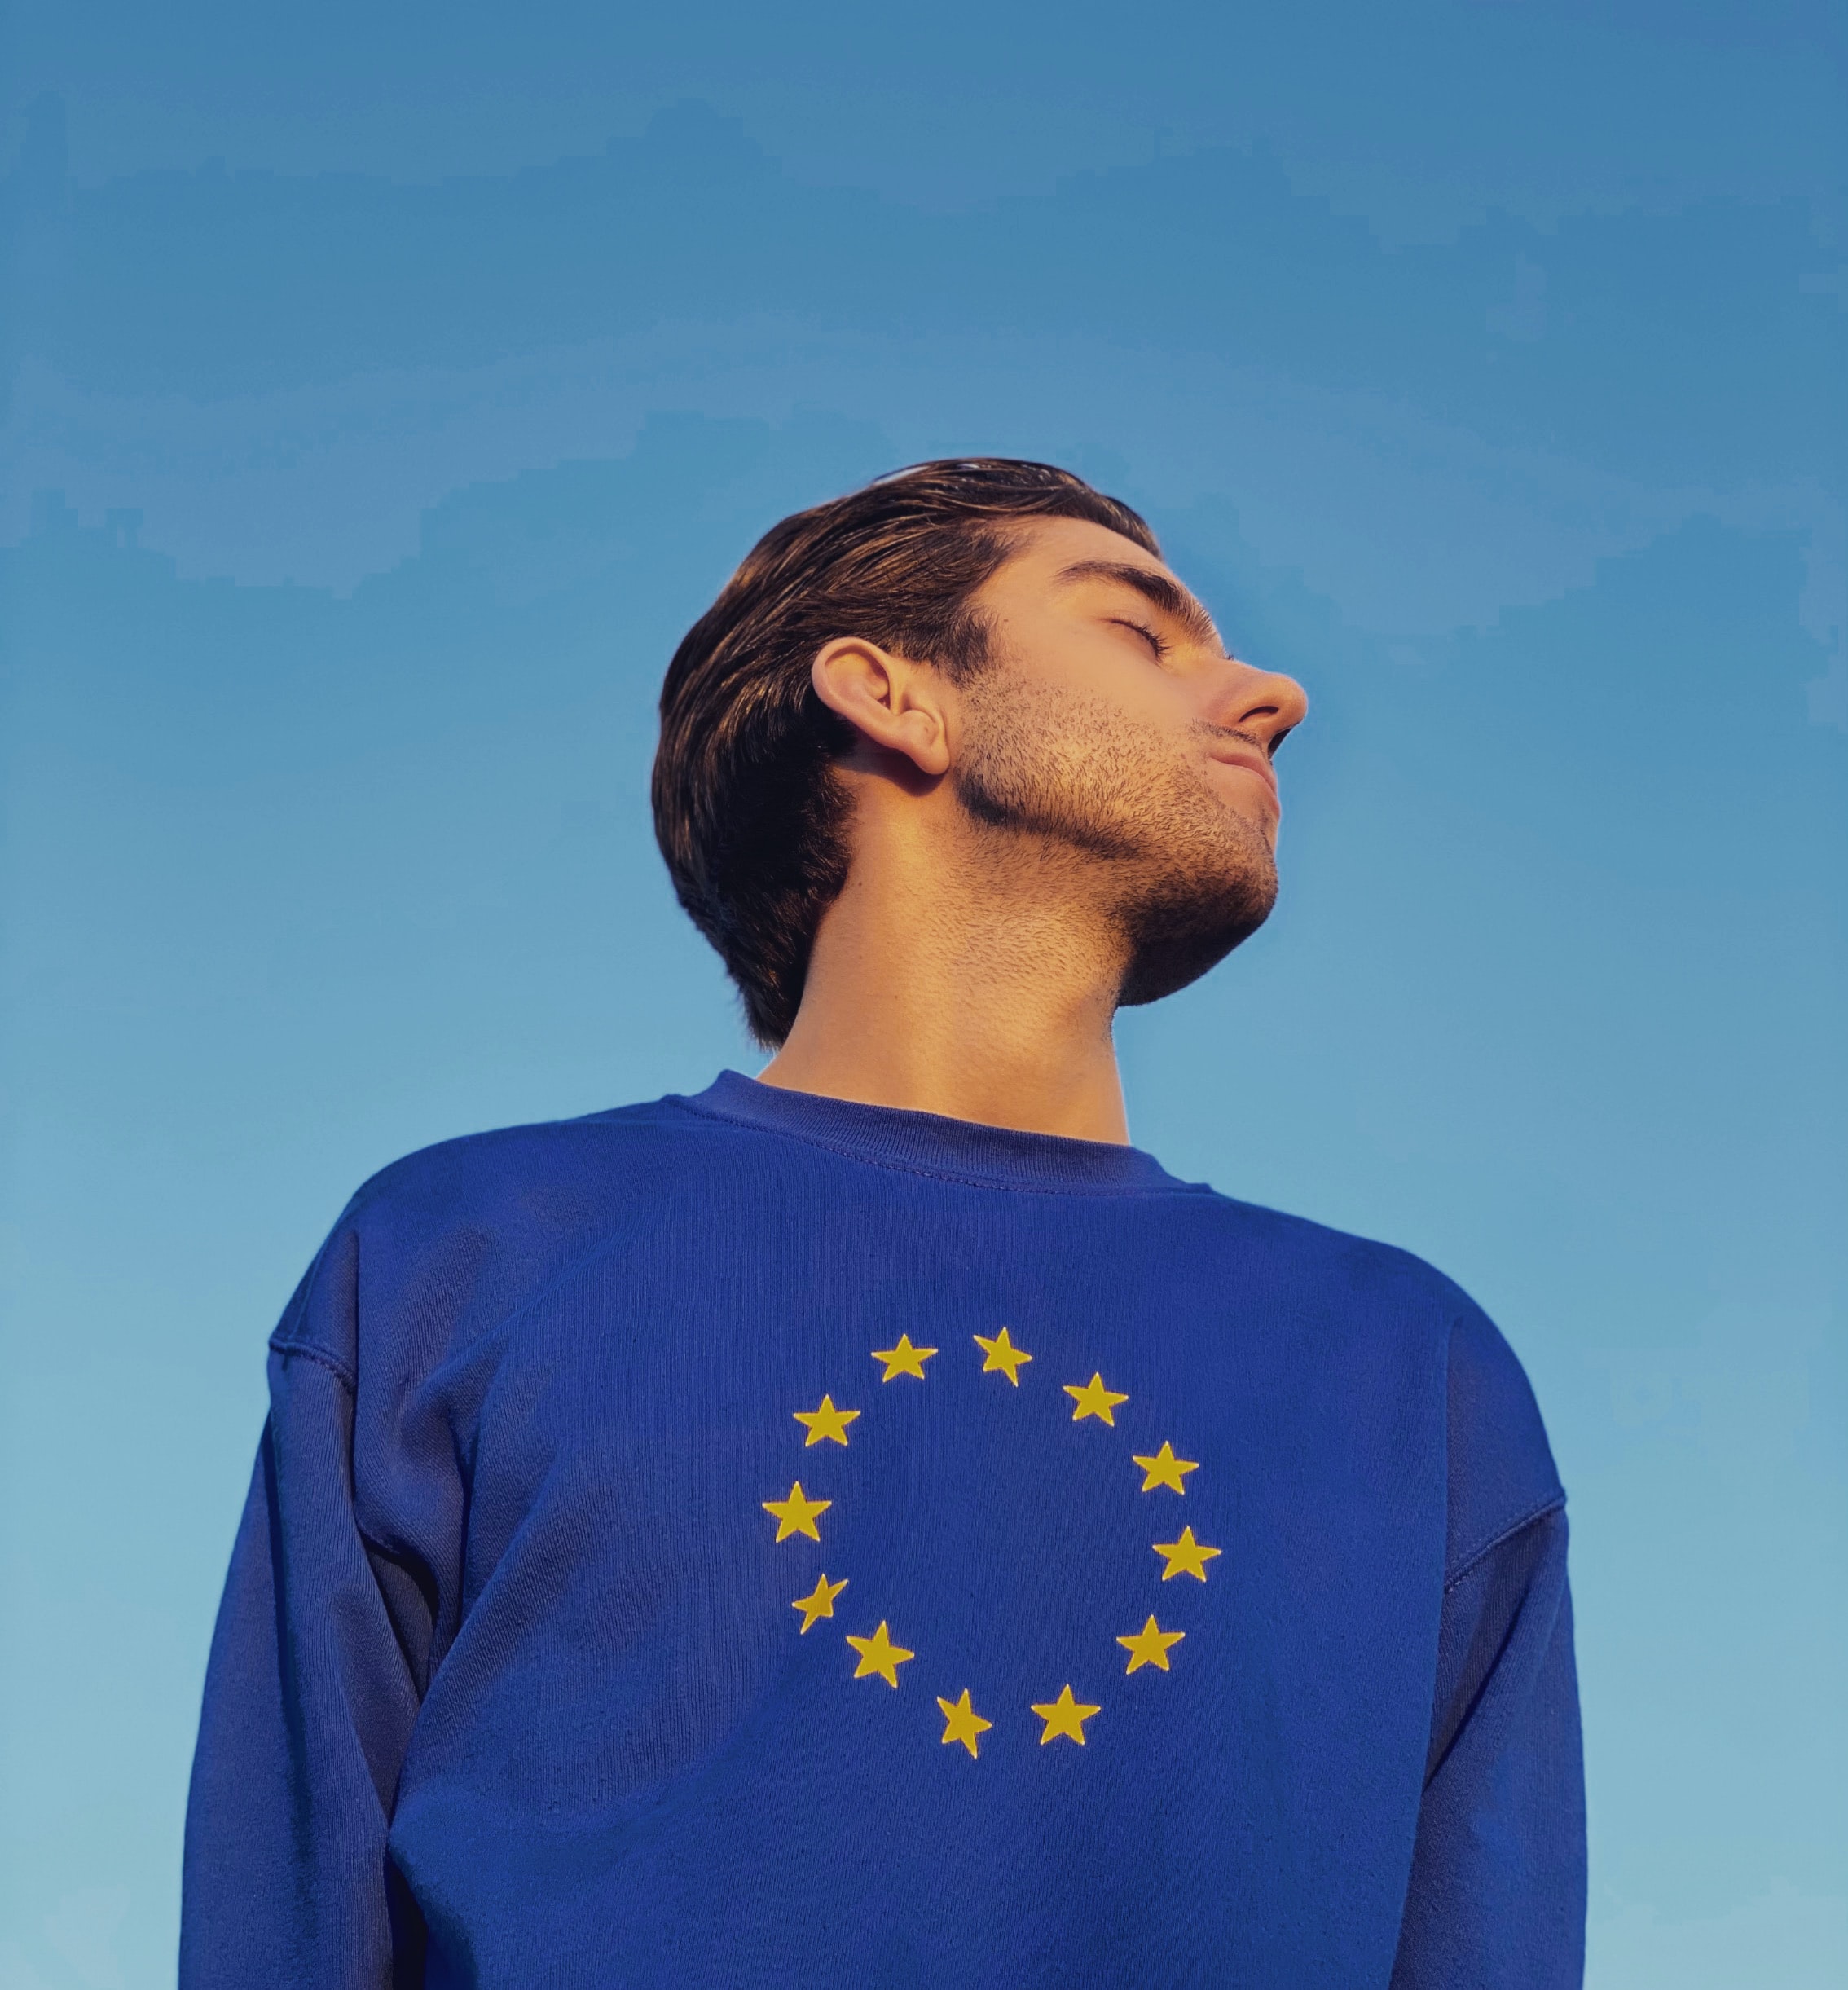 Ende September haben die Interessenverbände Ecommerce Europe und EuroCommerce einen gemeinsamen Bericht zur Lage des E-Commerce vorgelegt. Dieser zeigt auf: Im Vergleich zu 2019 ist der gesamte europäische E-Commerce um zehn Prozent gestiegen, wodurch neue Anforderungen an Politik und Unternehmen entstanden sind.